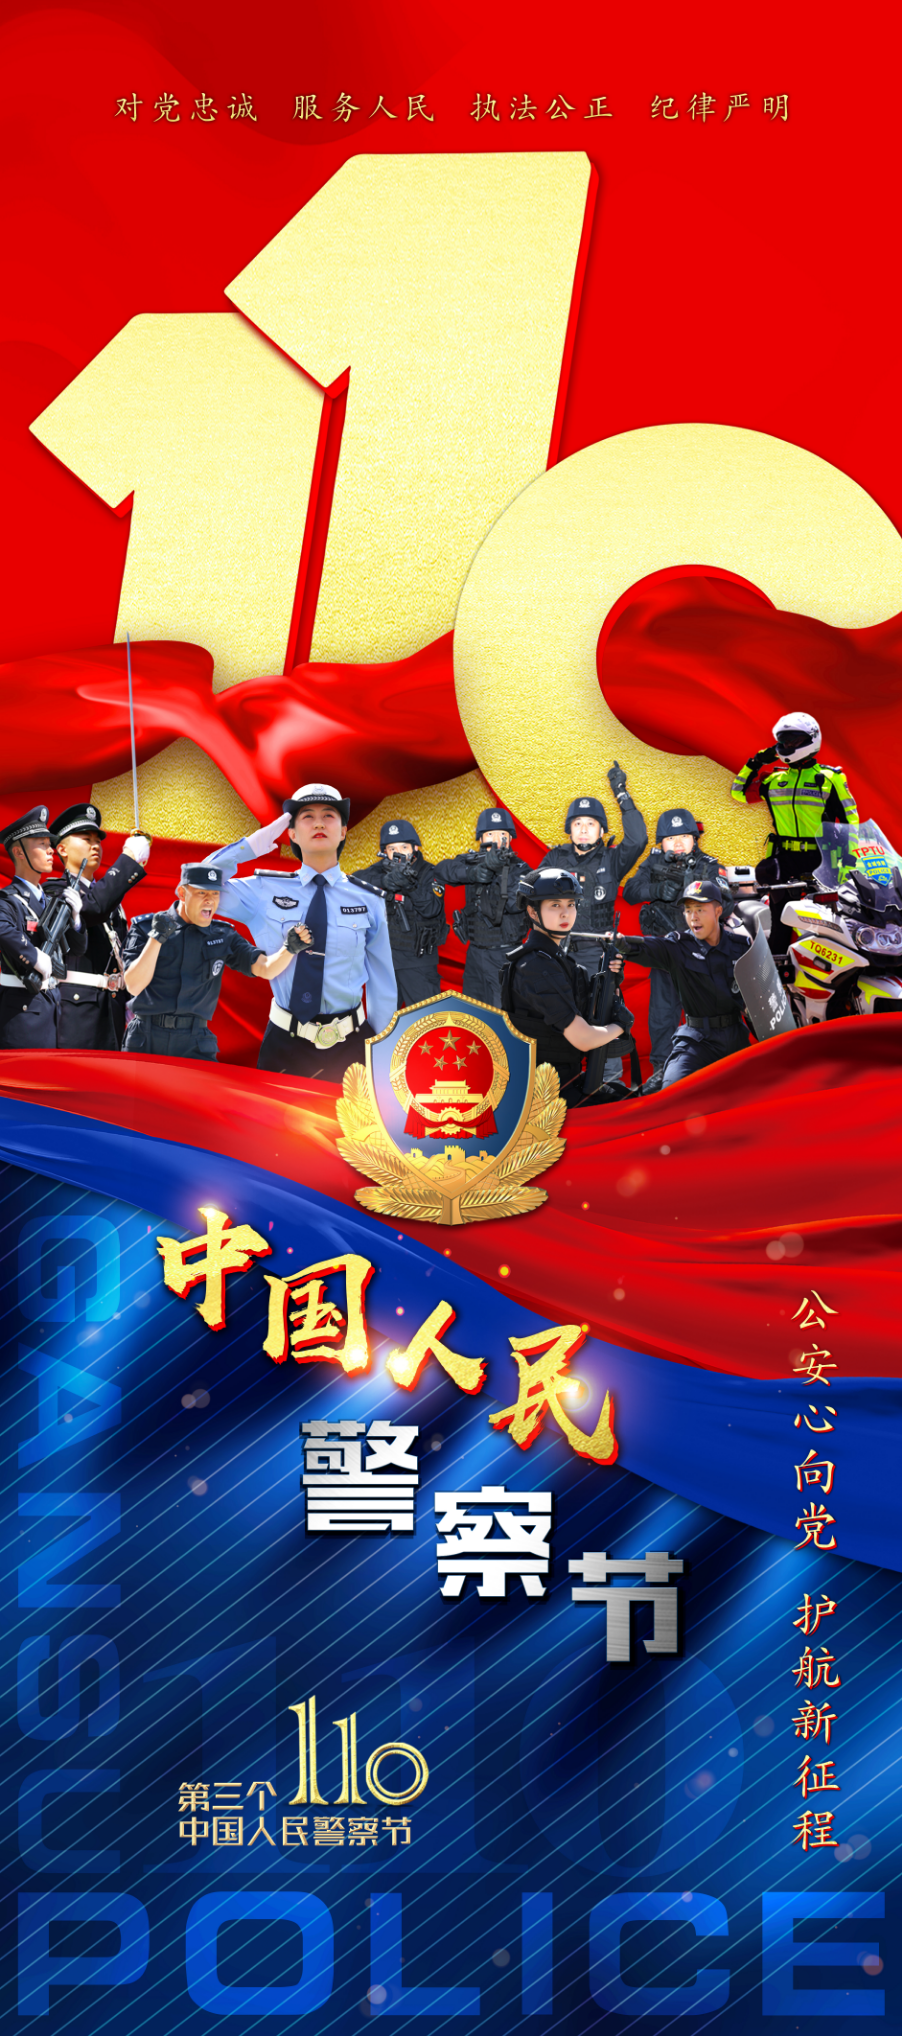 【110警察节】甘肃公安机关热烈庆祝第三个中国人民警察节